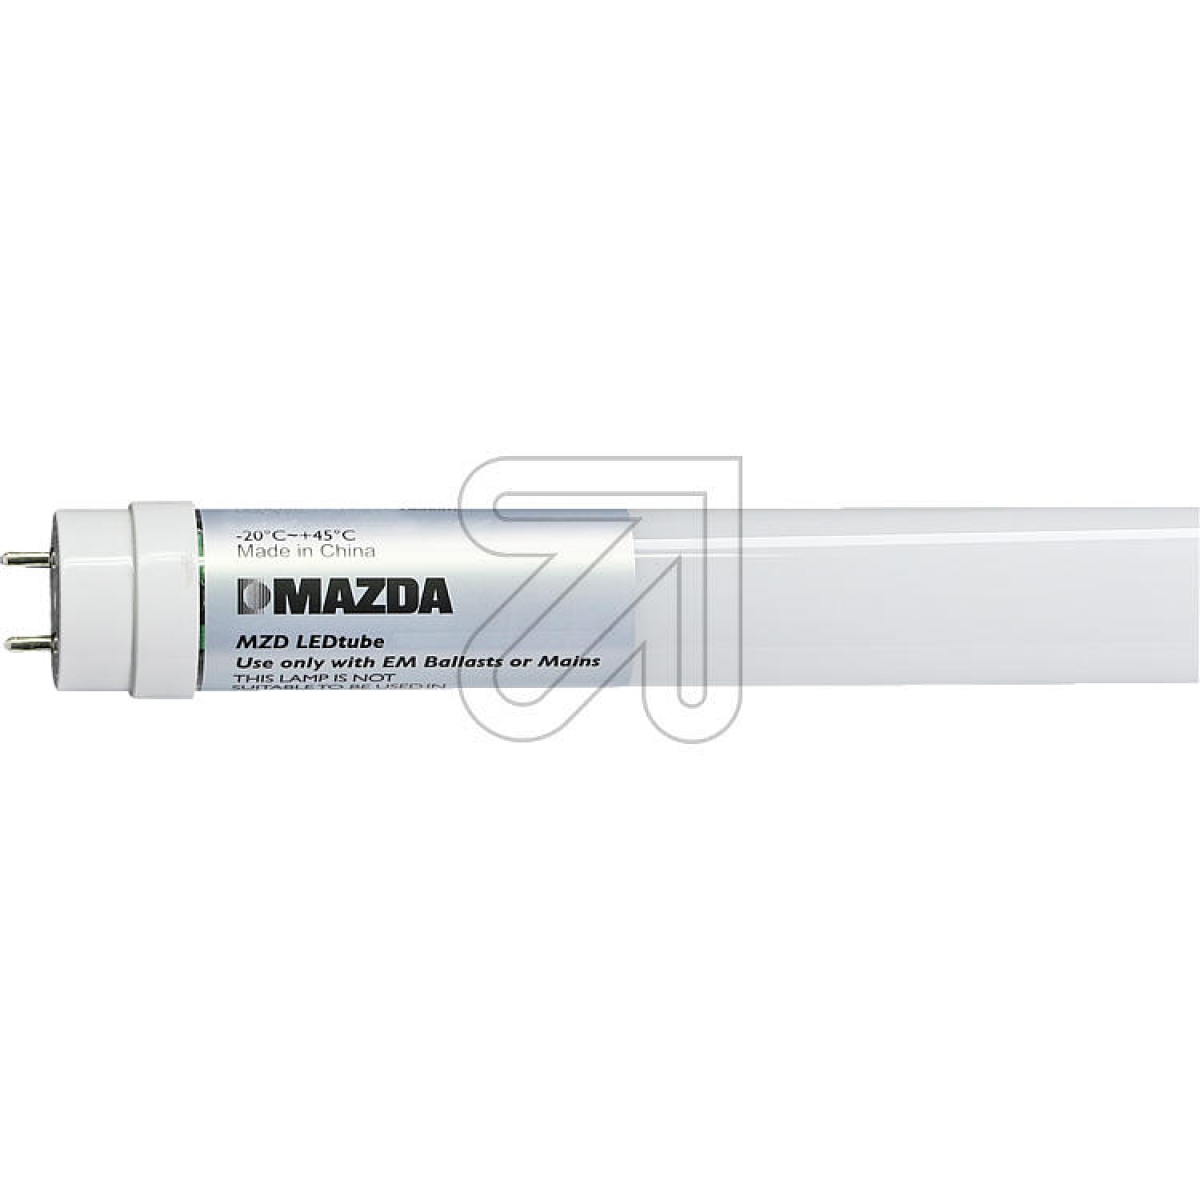 MAZDA LightingMAZDA LEDtube T8 600mm 8W 840 54328400-Price for 20 pcs.Article-No: 523000